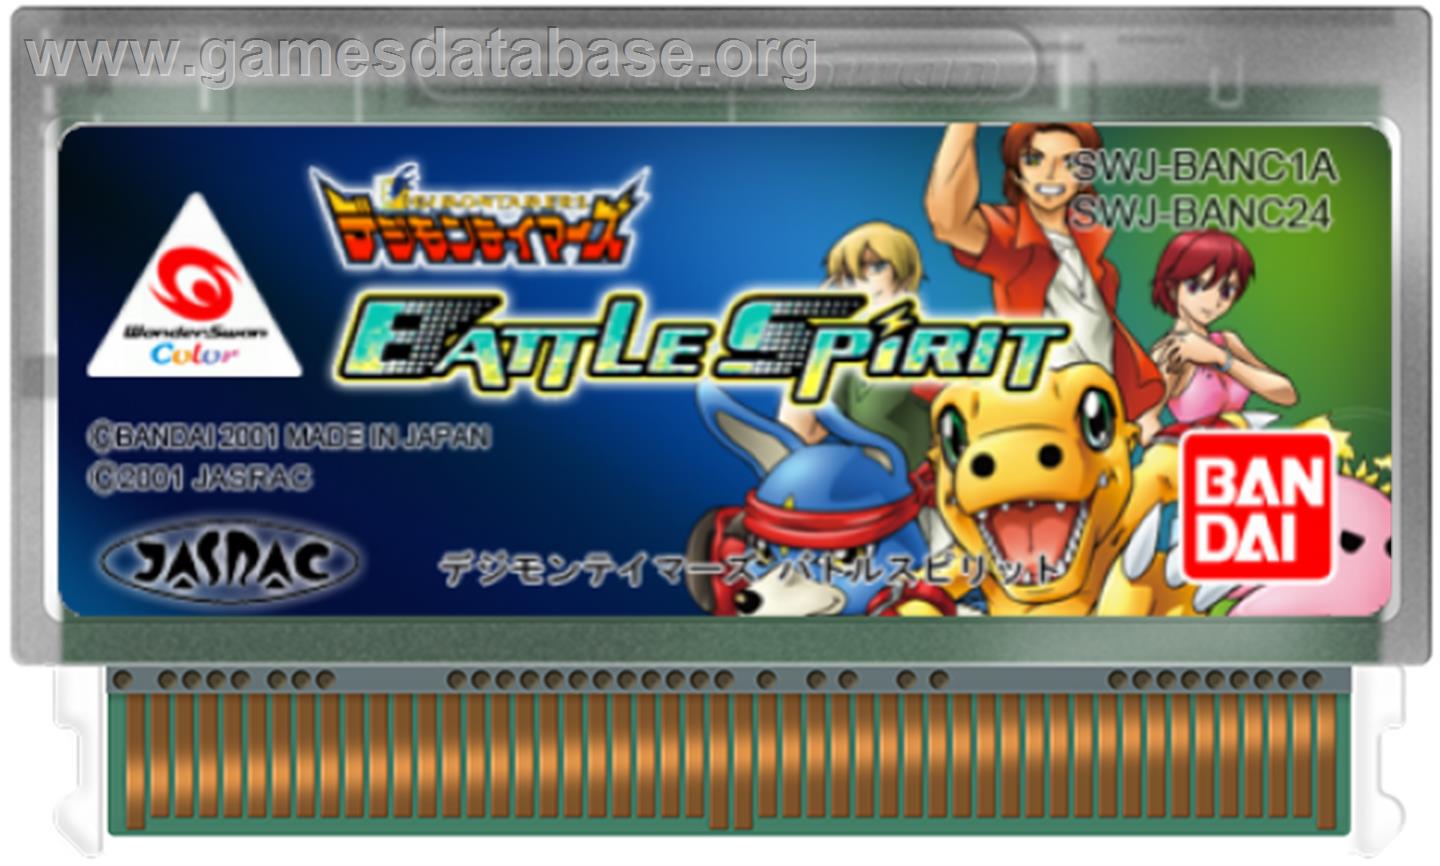 Digimon Tamers: Battle Spirit - Bandai WonderSwan Color - Artwork - Cartridge